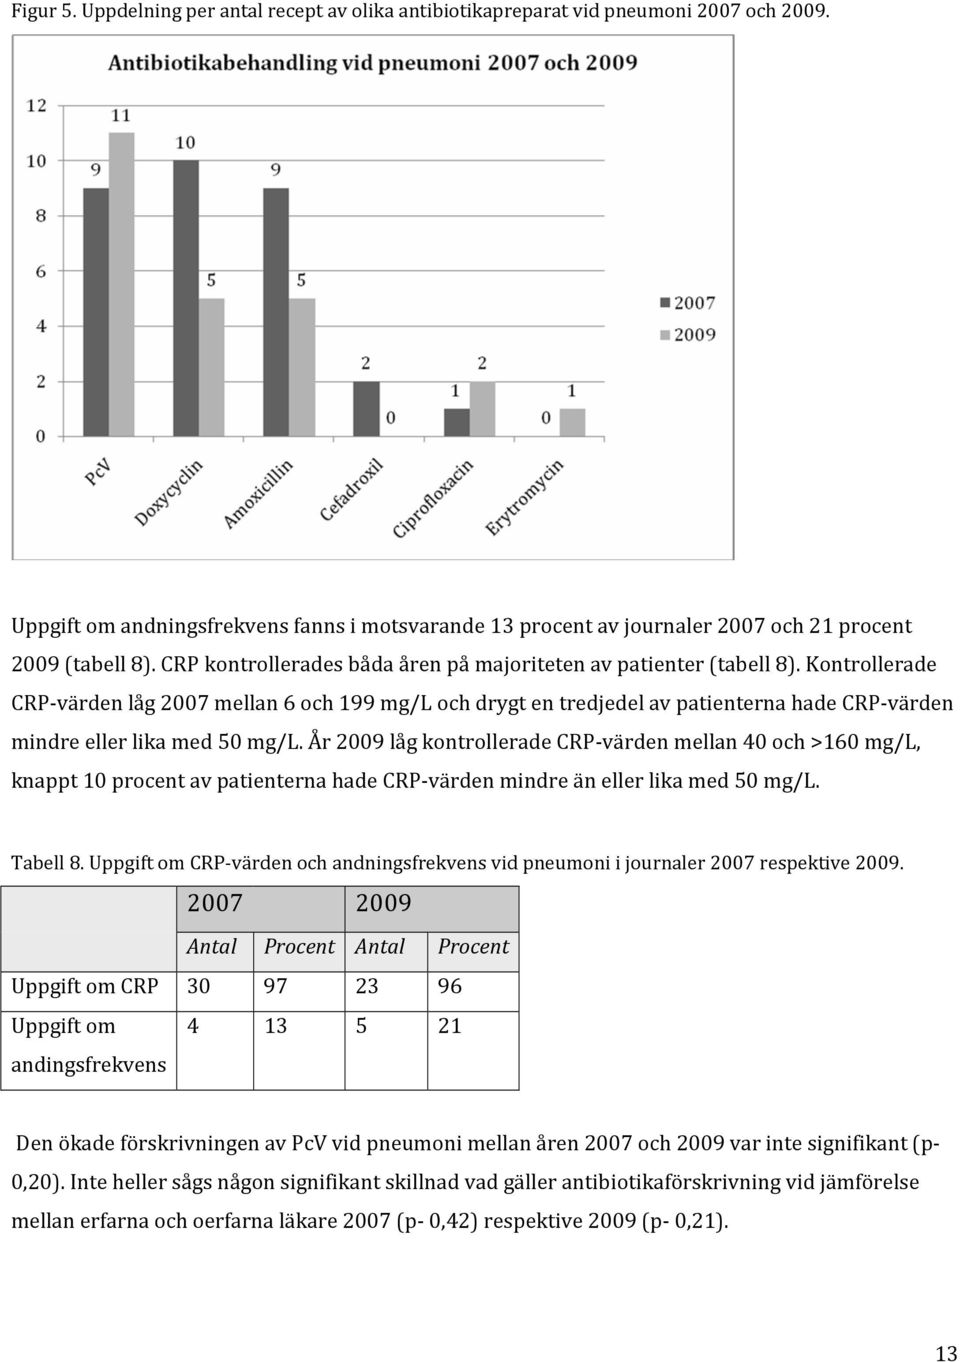 Kontrollerade CRP-värden låg 2007 mellan 6 och 199 mg/l och drygt en tredjedel av patienterna hade CRP-värden mindre eller lika med 50 mg/l.